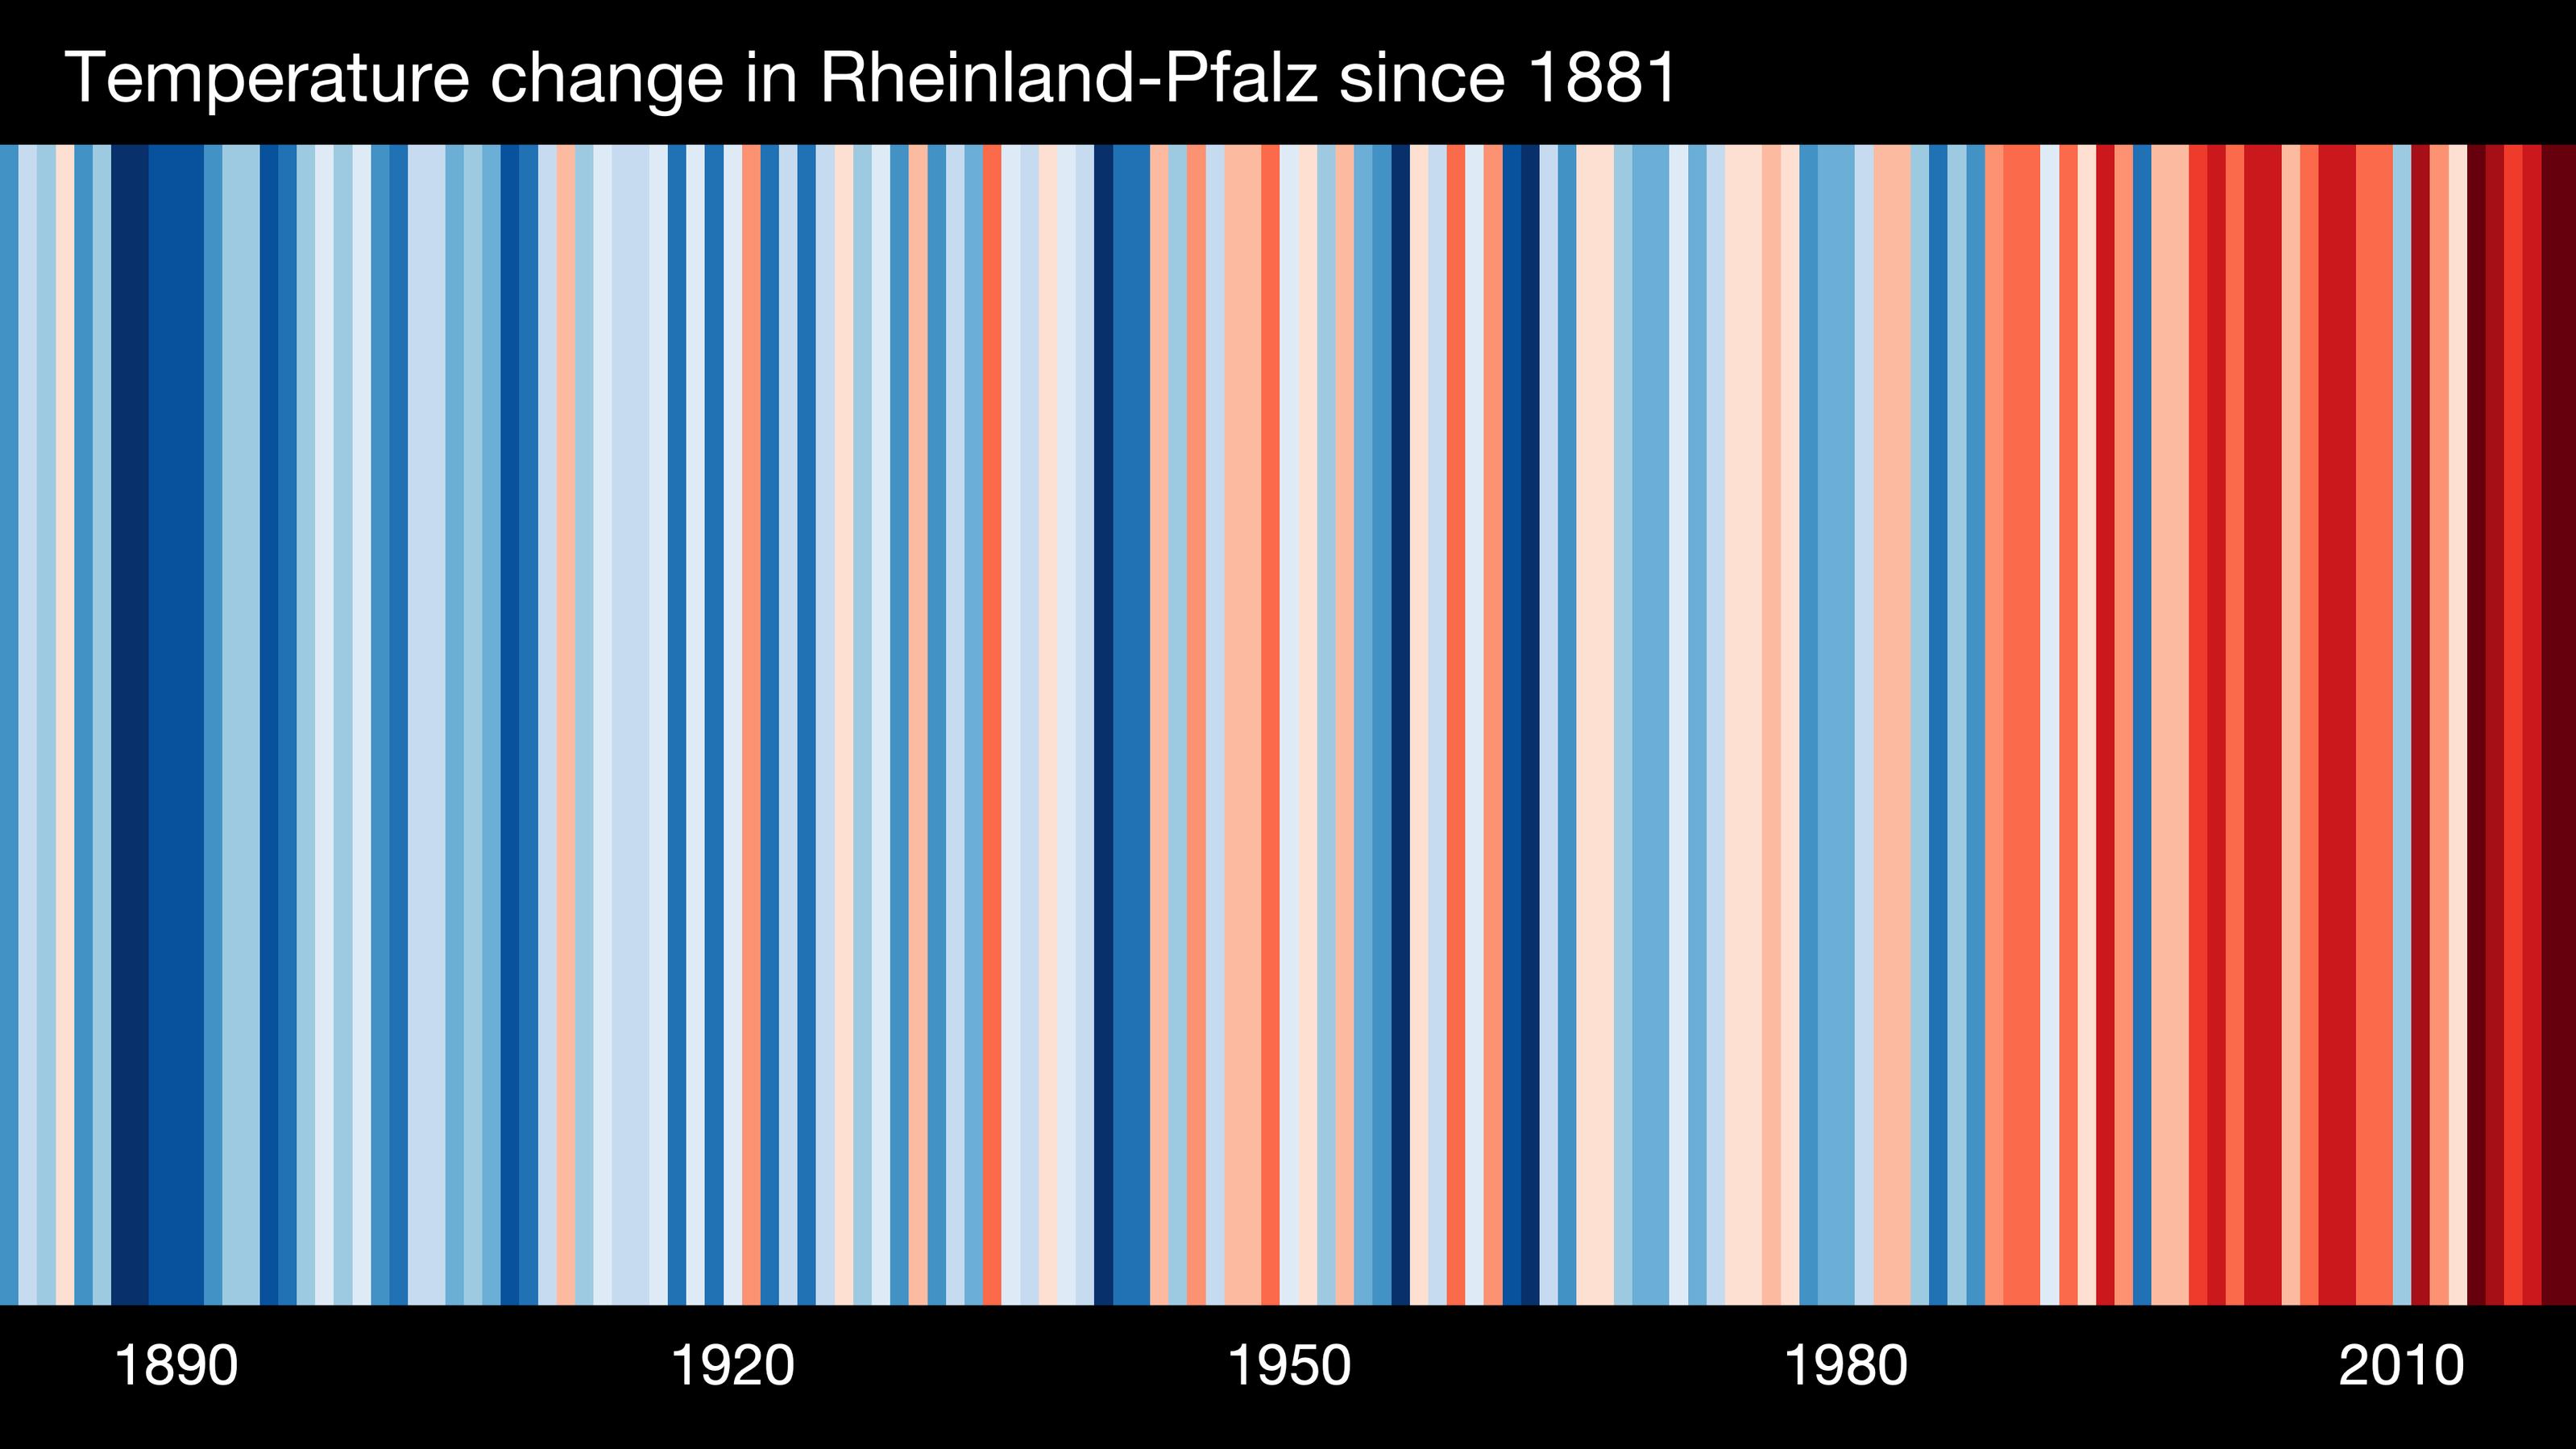 Der Barcode für Rheinland-Pfalz